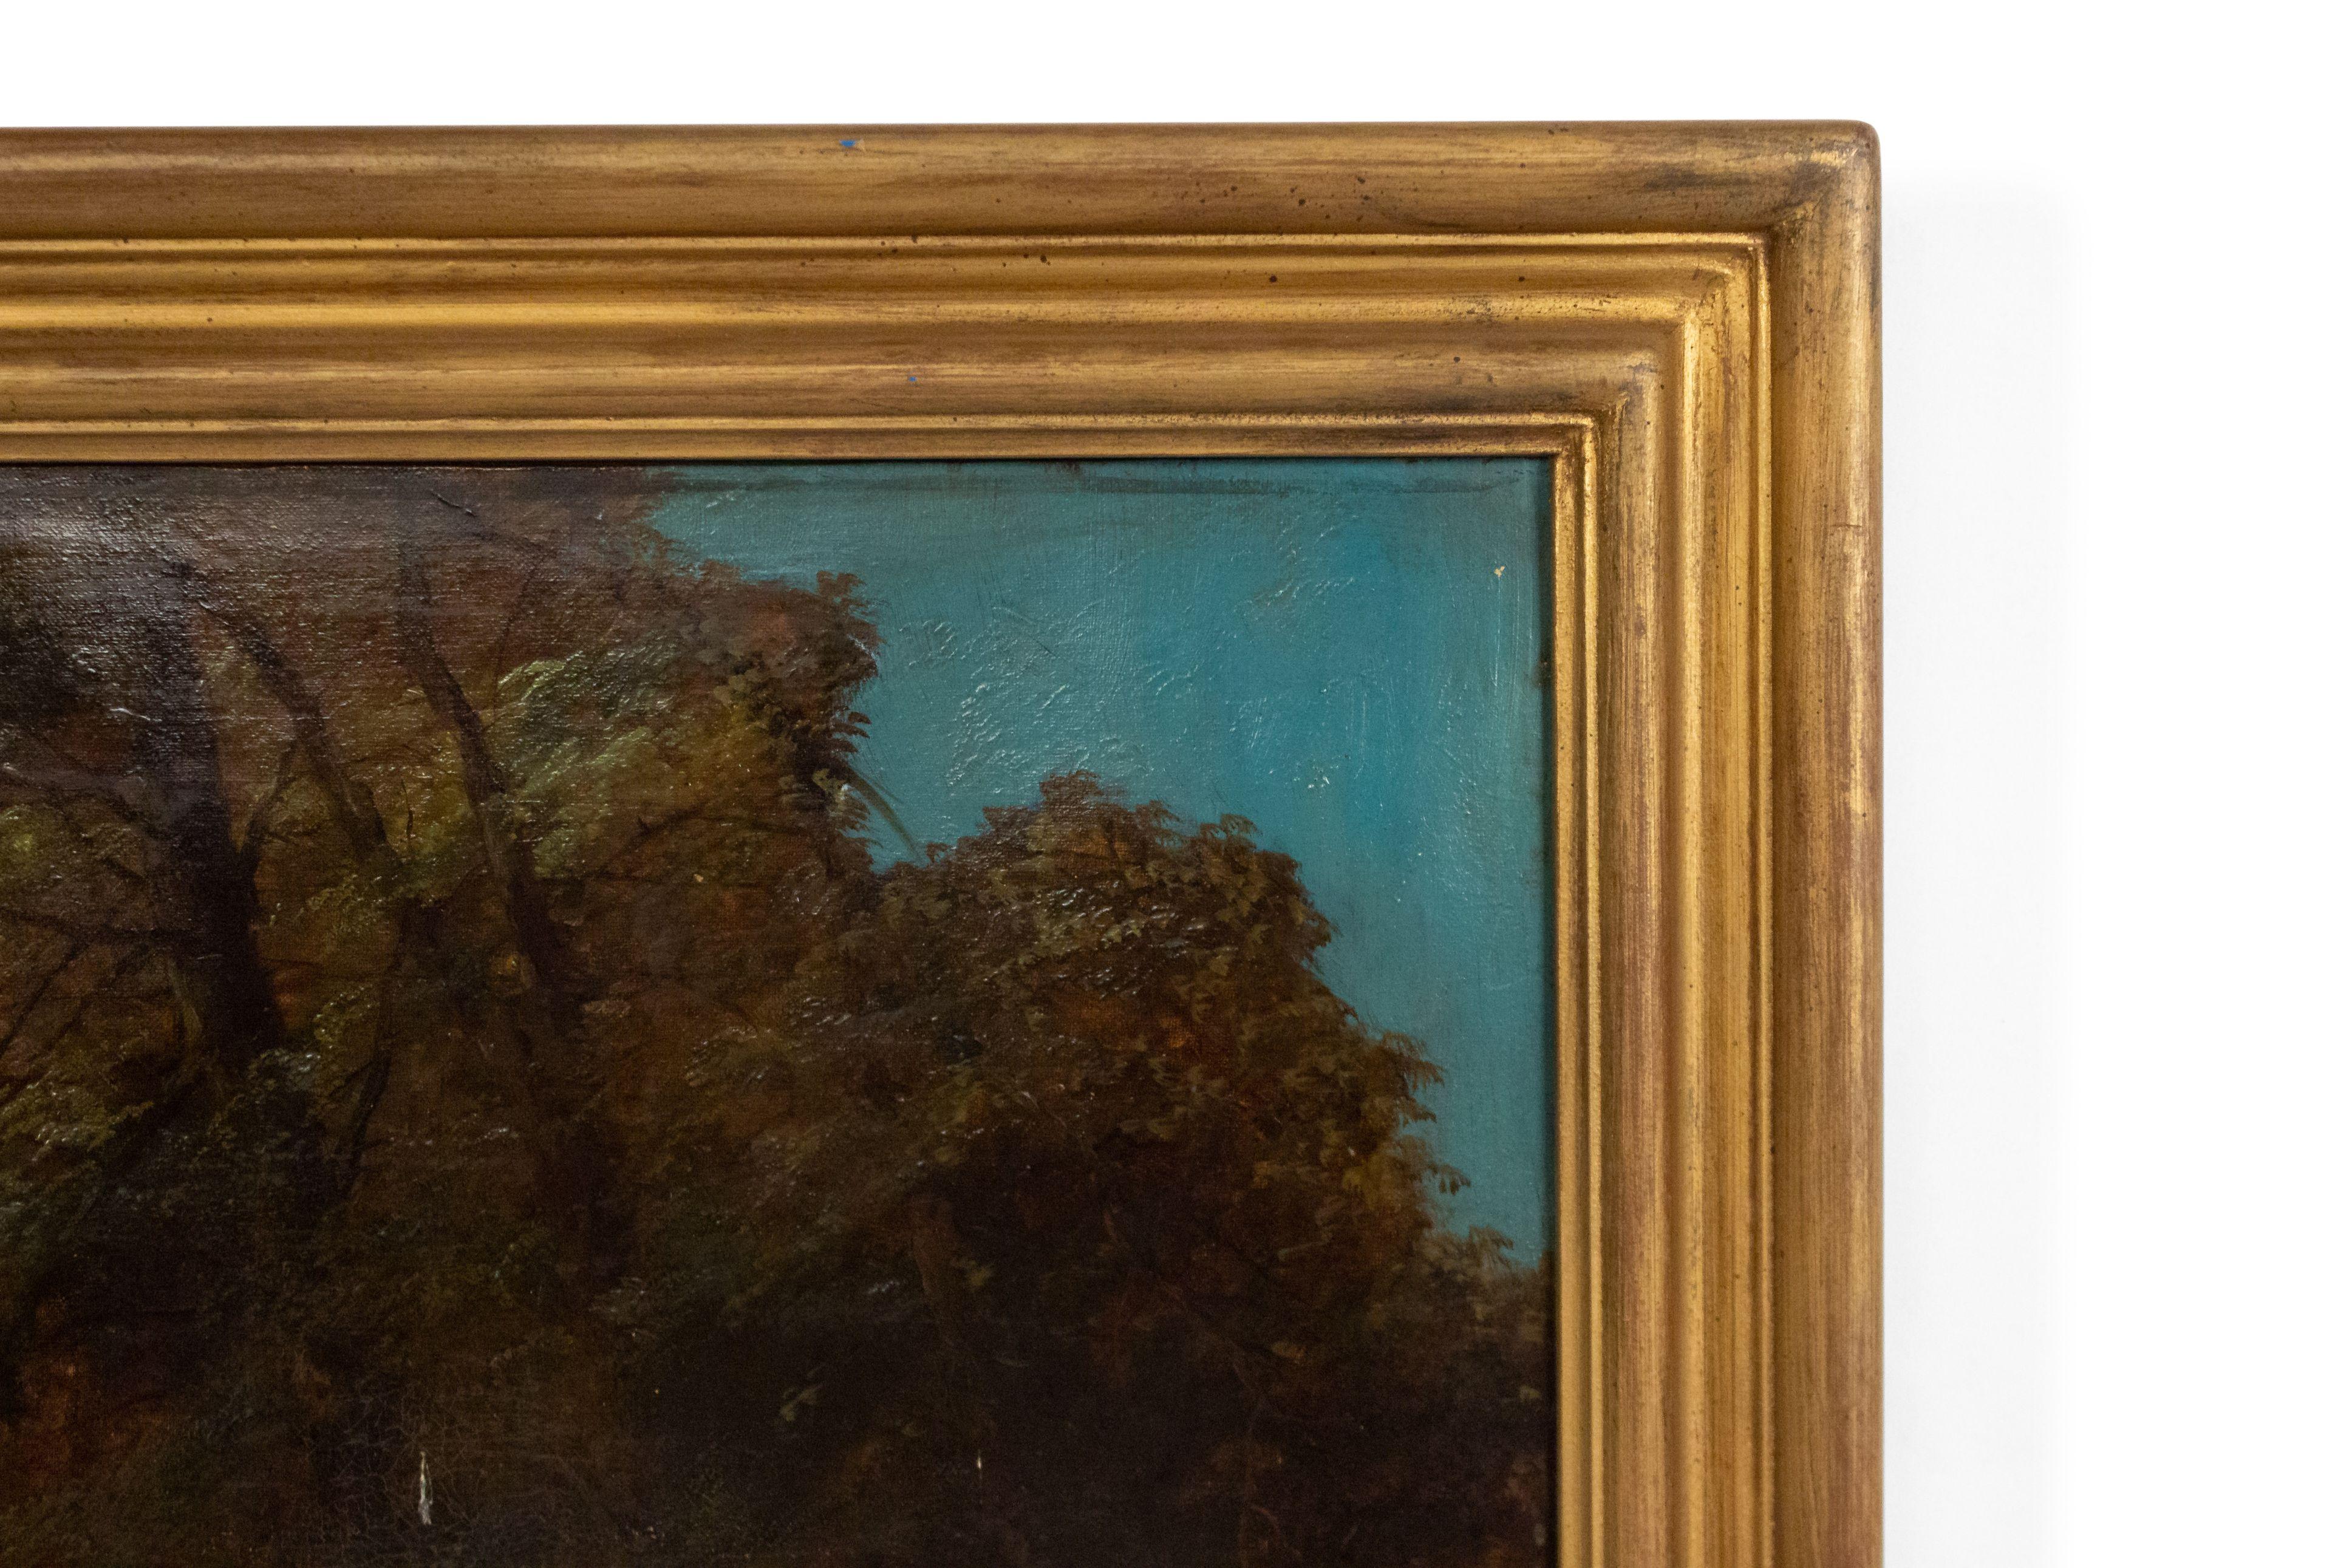 Peinture à l'huile pastorale de la fin du 19e siècle représentant des personnages dans une forêt au bord d'un ruisseau avec un arbre tombé, montée dans un cadre doré.